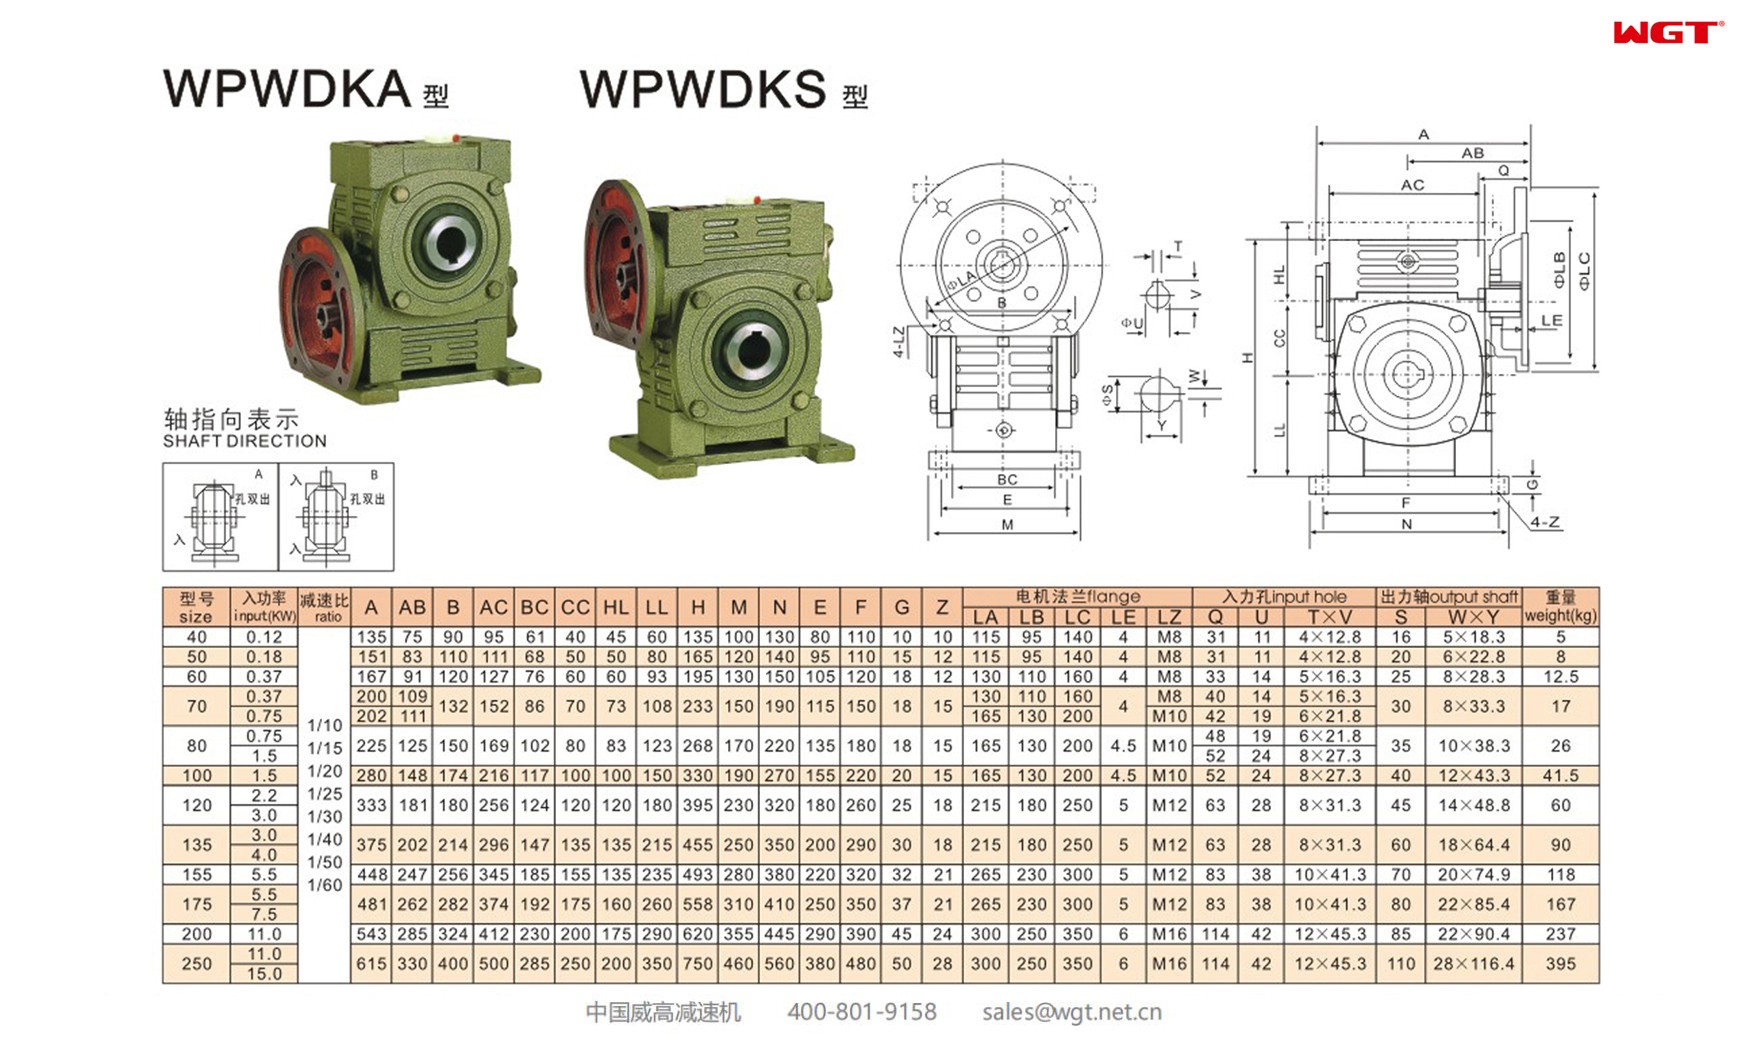 WPWDKA120 worm gear reducer universal speed reducer